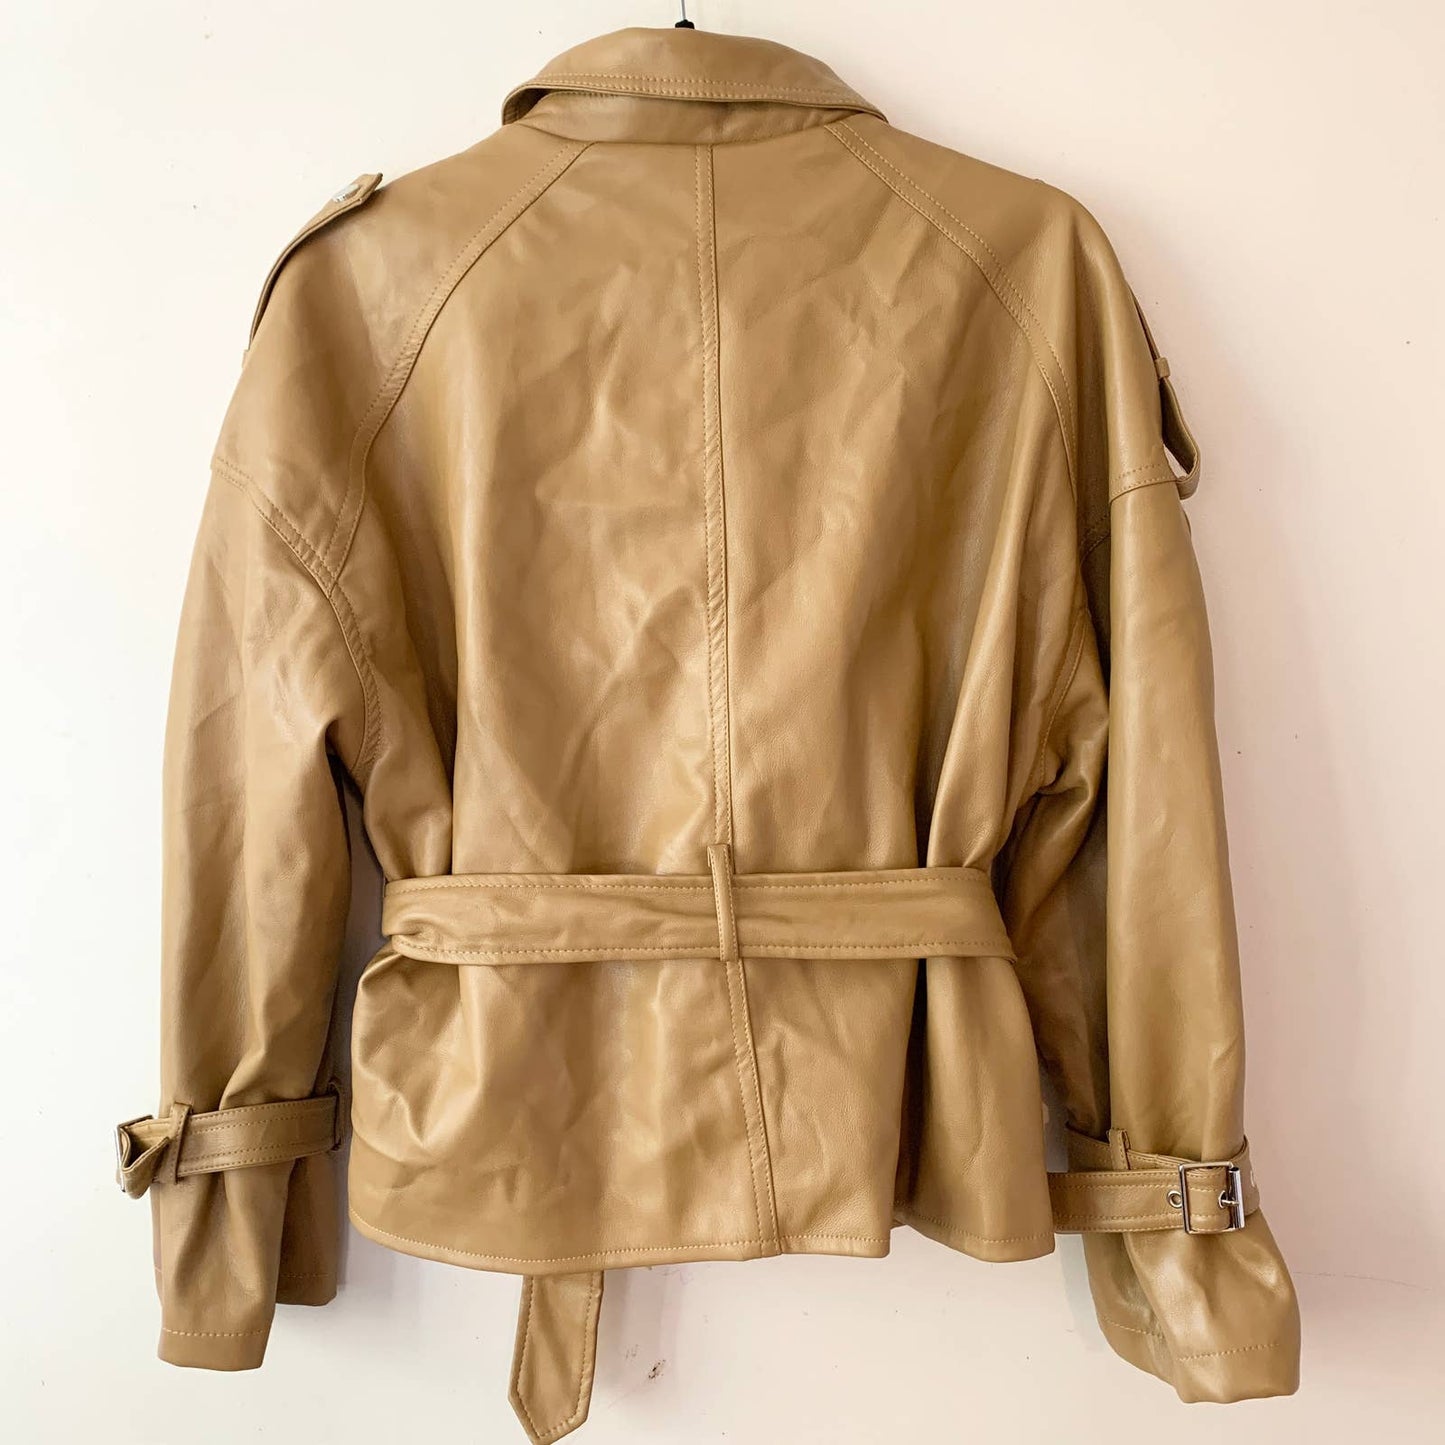 Azalea Wang Faux Leather Camel Belted Short Moto Jacket large